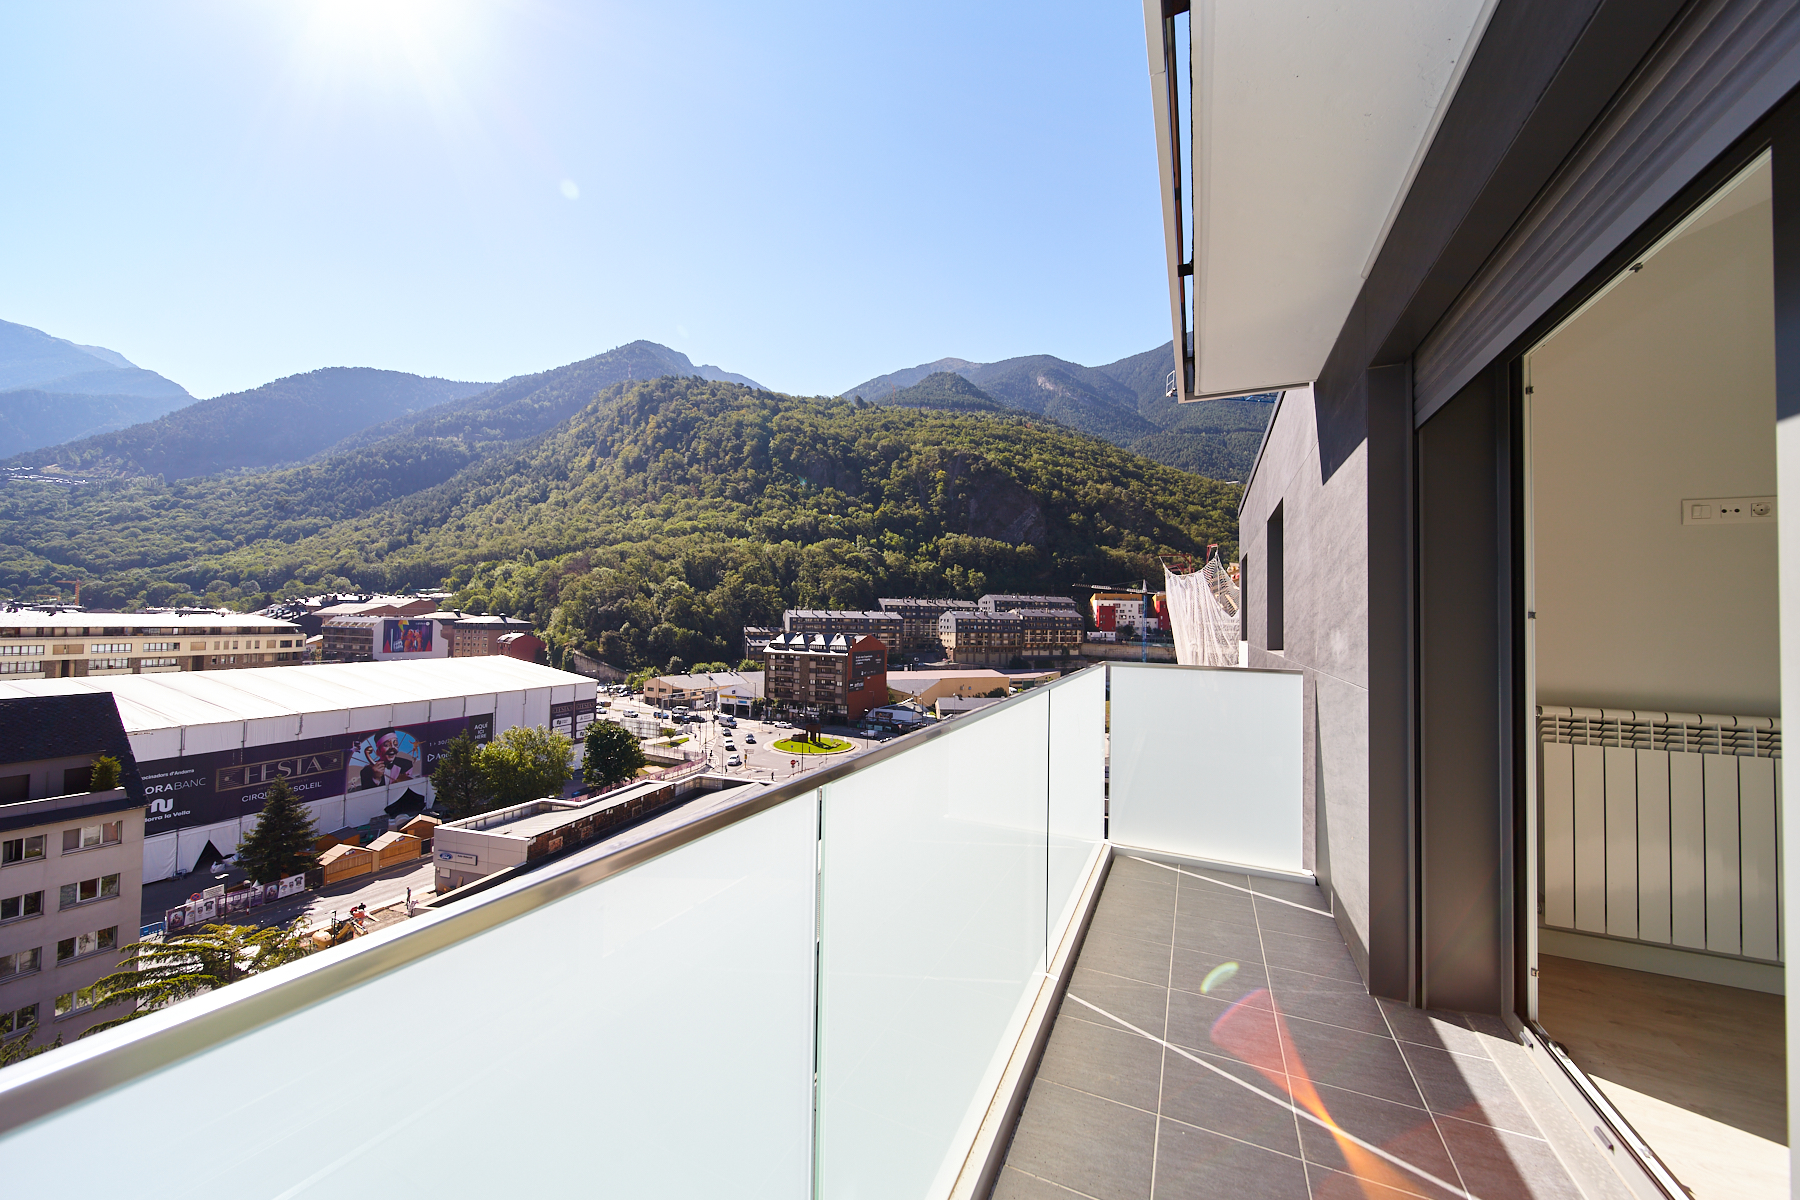 Àtic en venda a Andorra la Vella, 4 habitacions, 160 metres